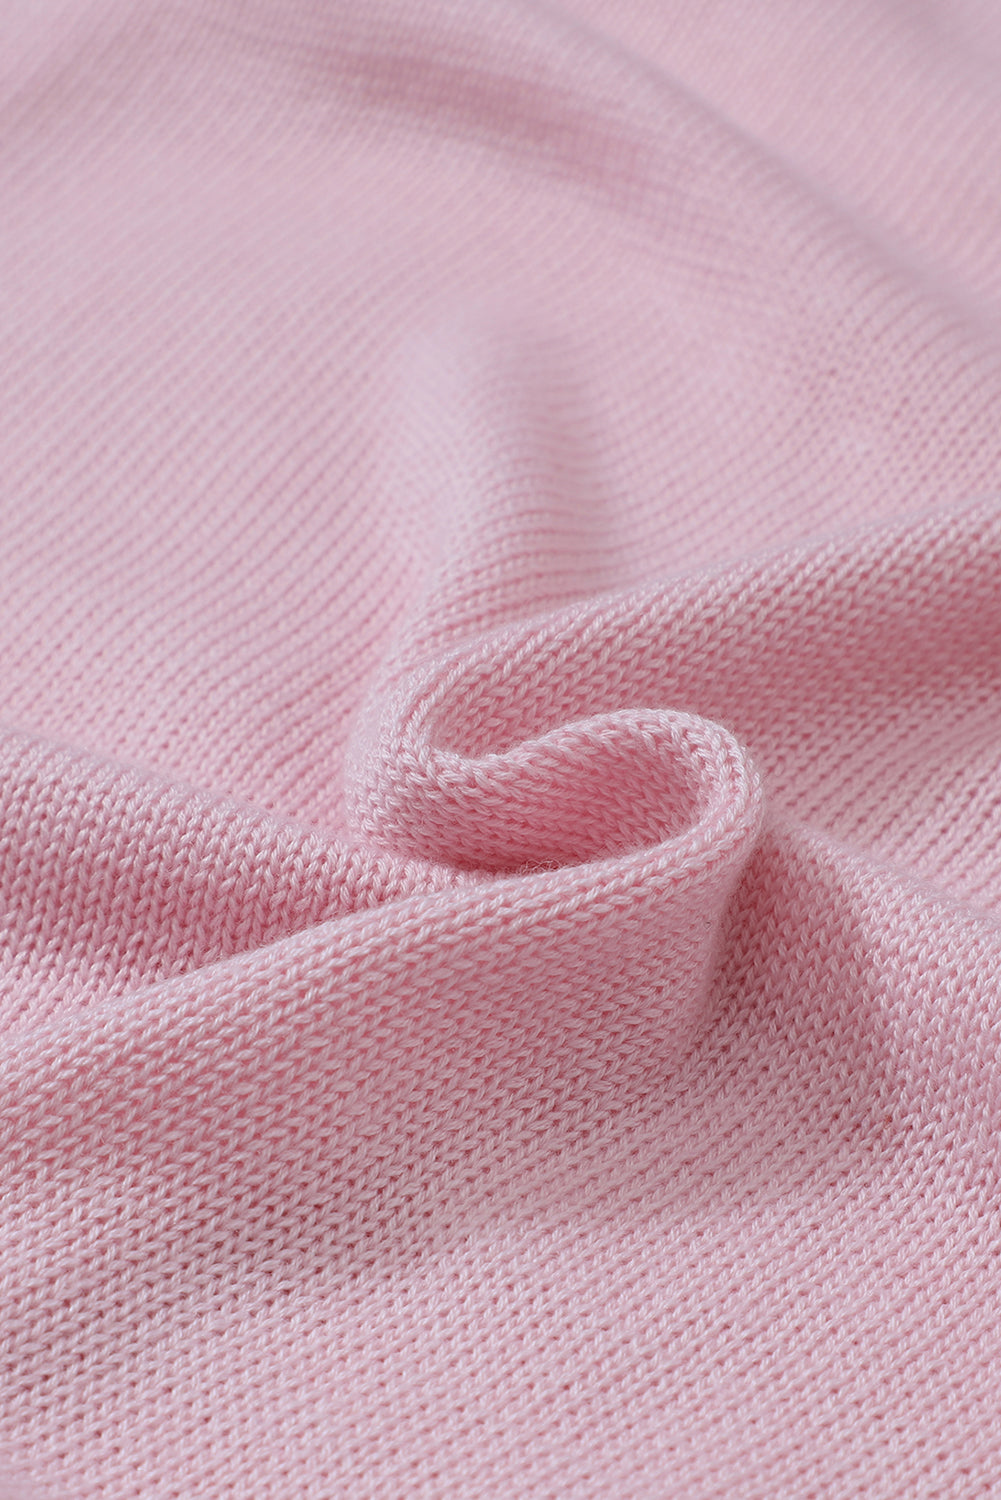 Rosafarbener lockerer Pullover mit ausgehöhlter Spitze und V-Ausschnitt